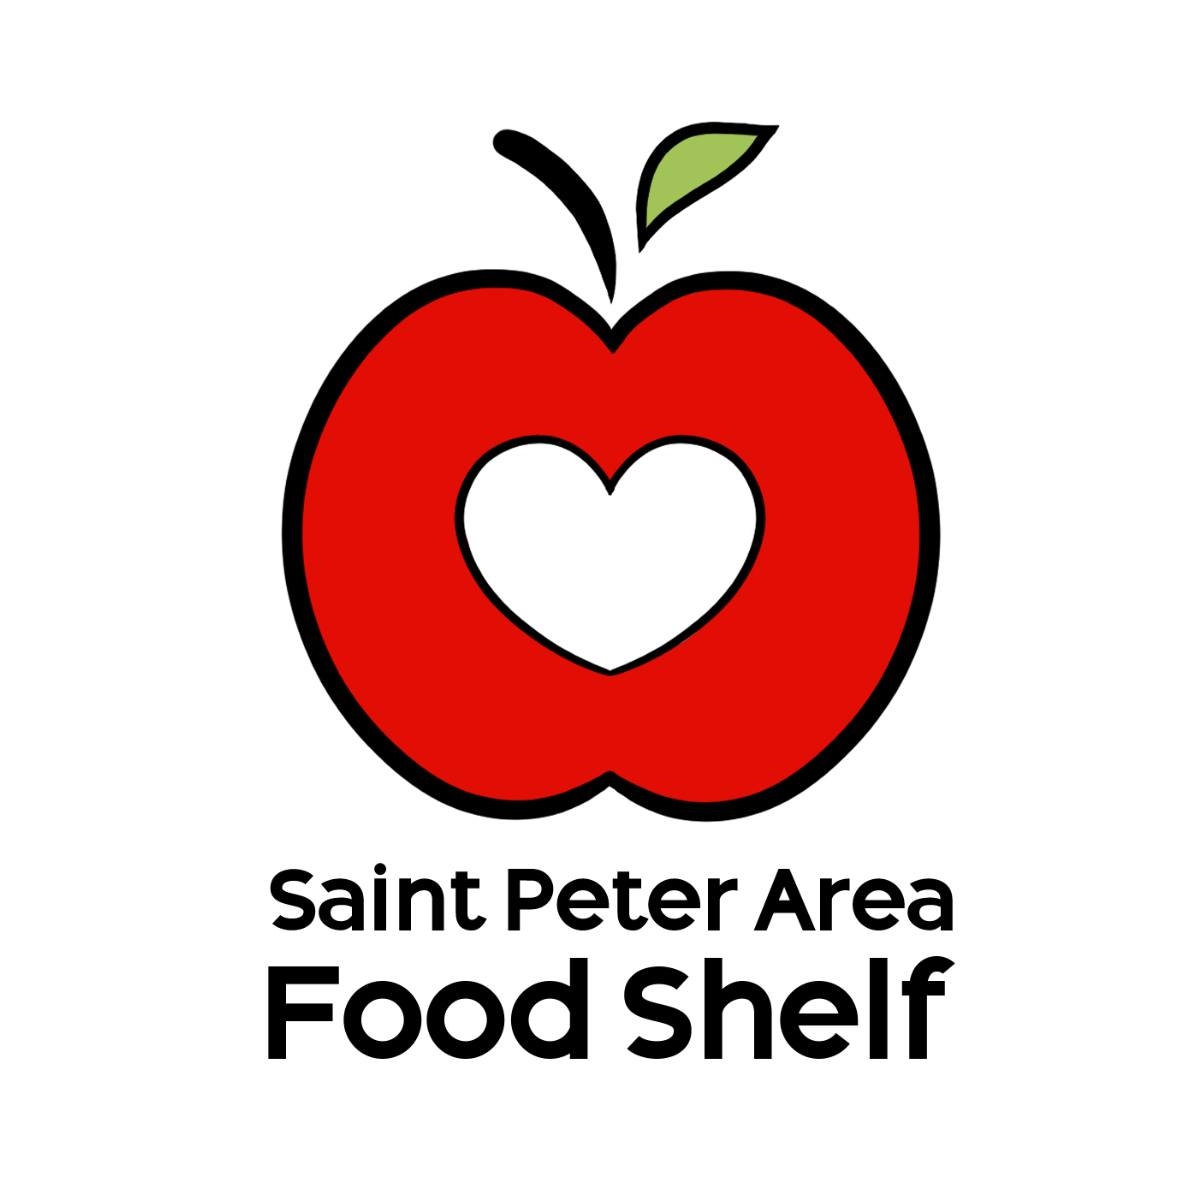 St. Peter Area Food Shelf